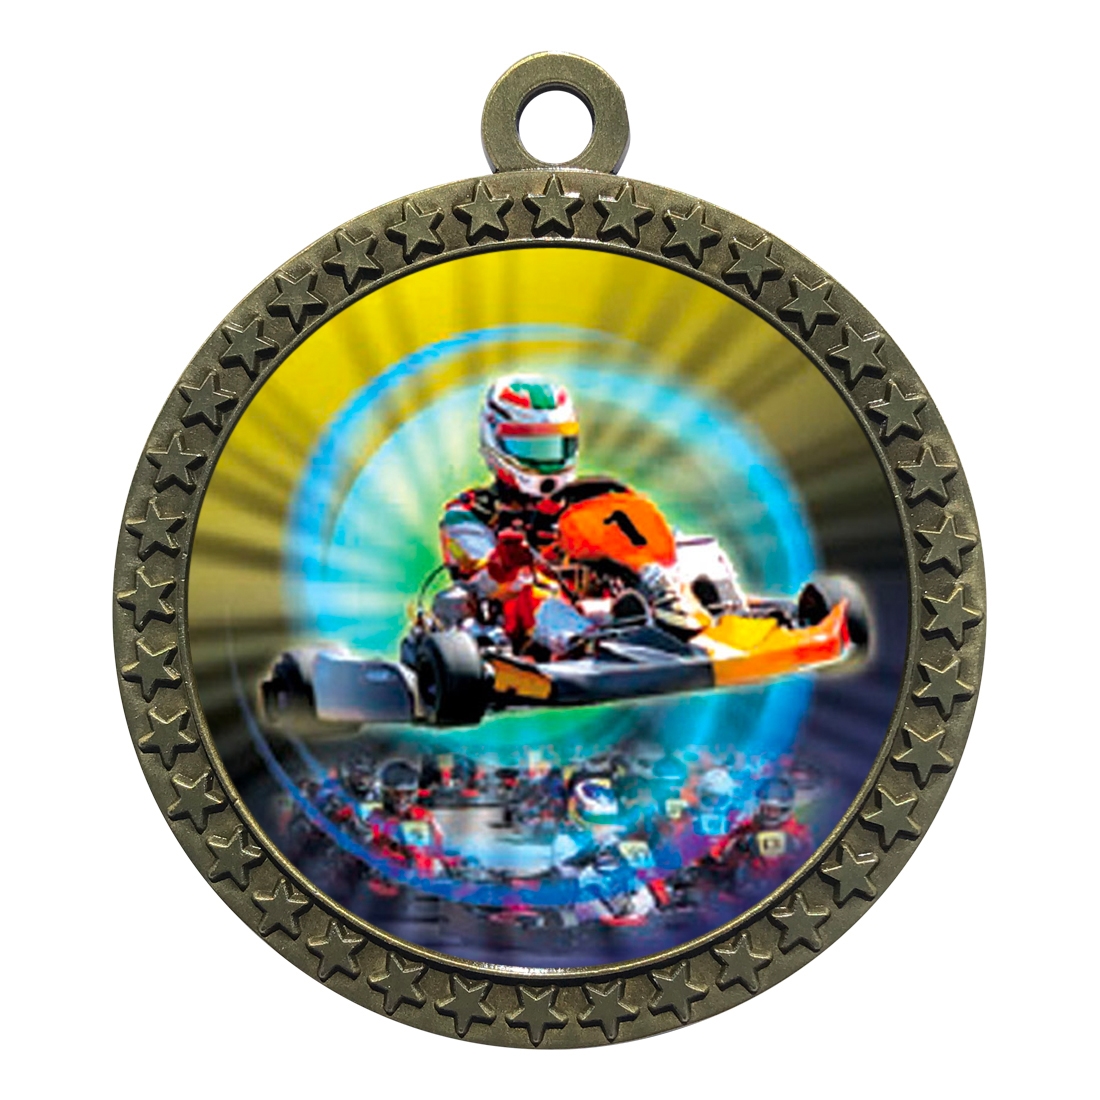 2-1/2" Go-Kart Medal